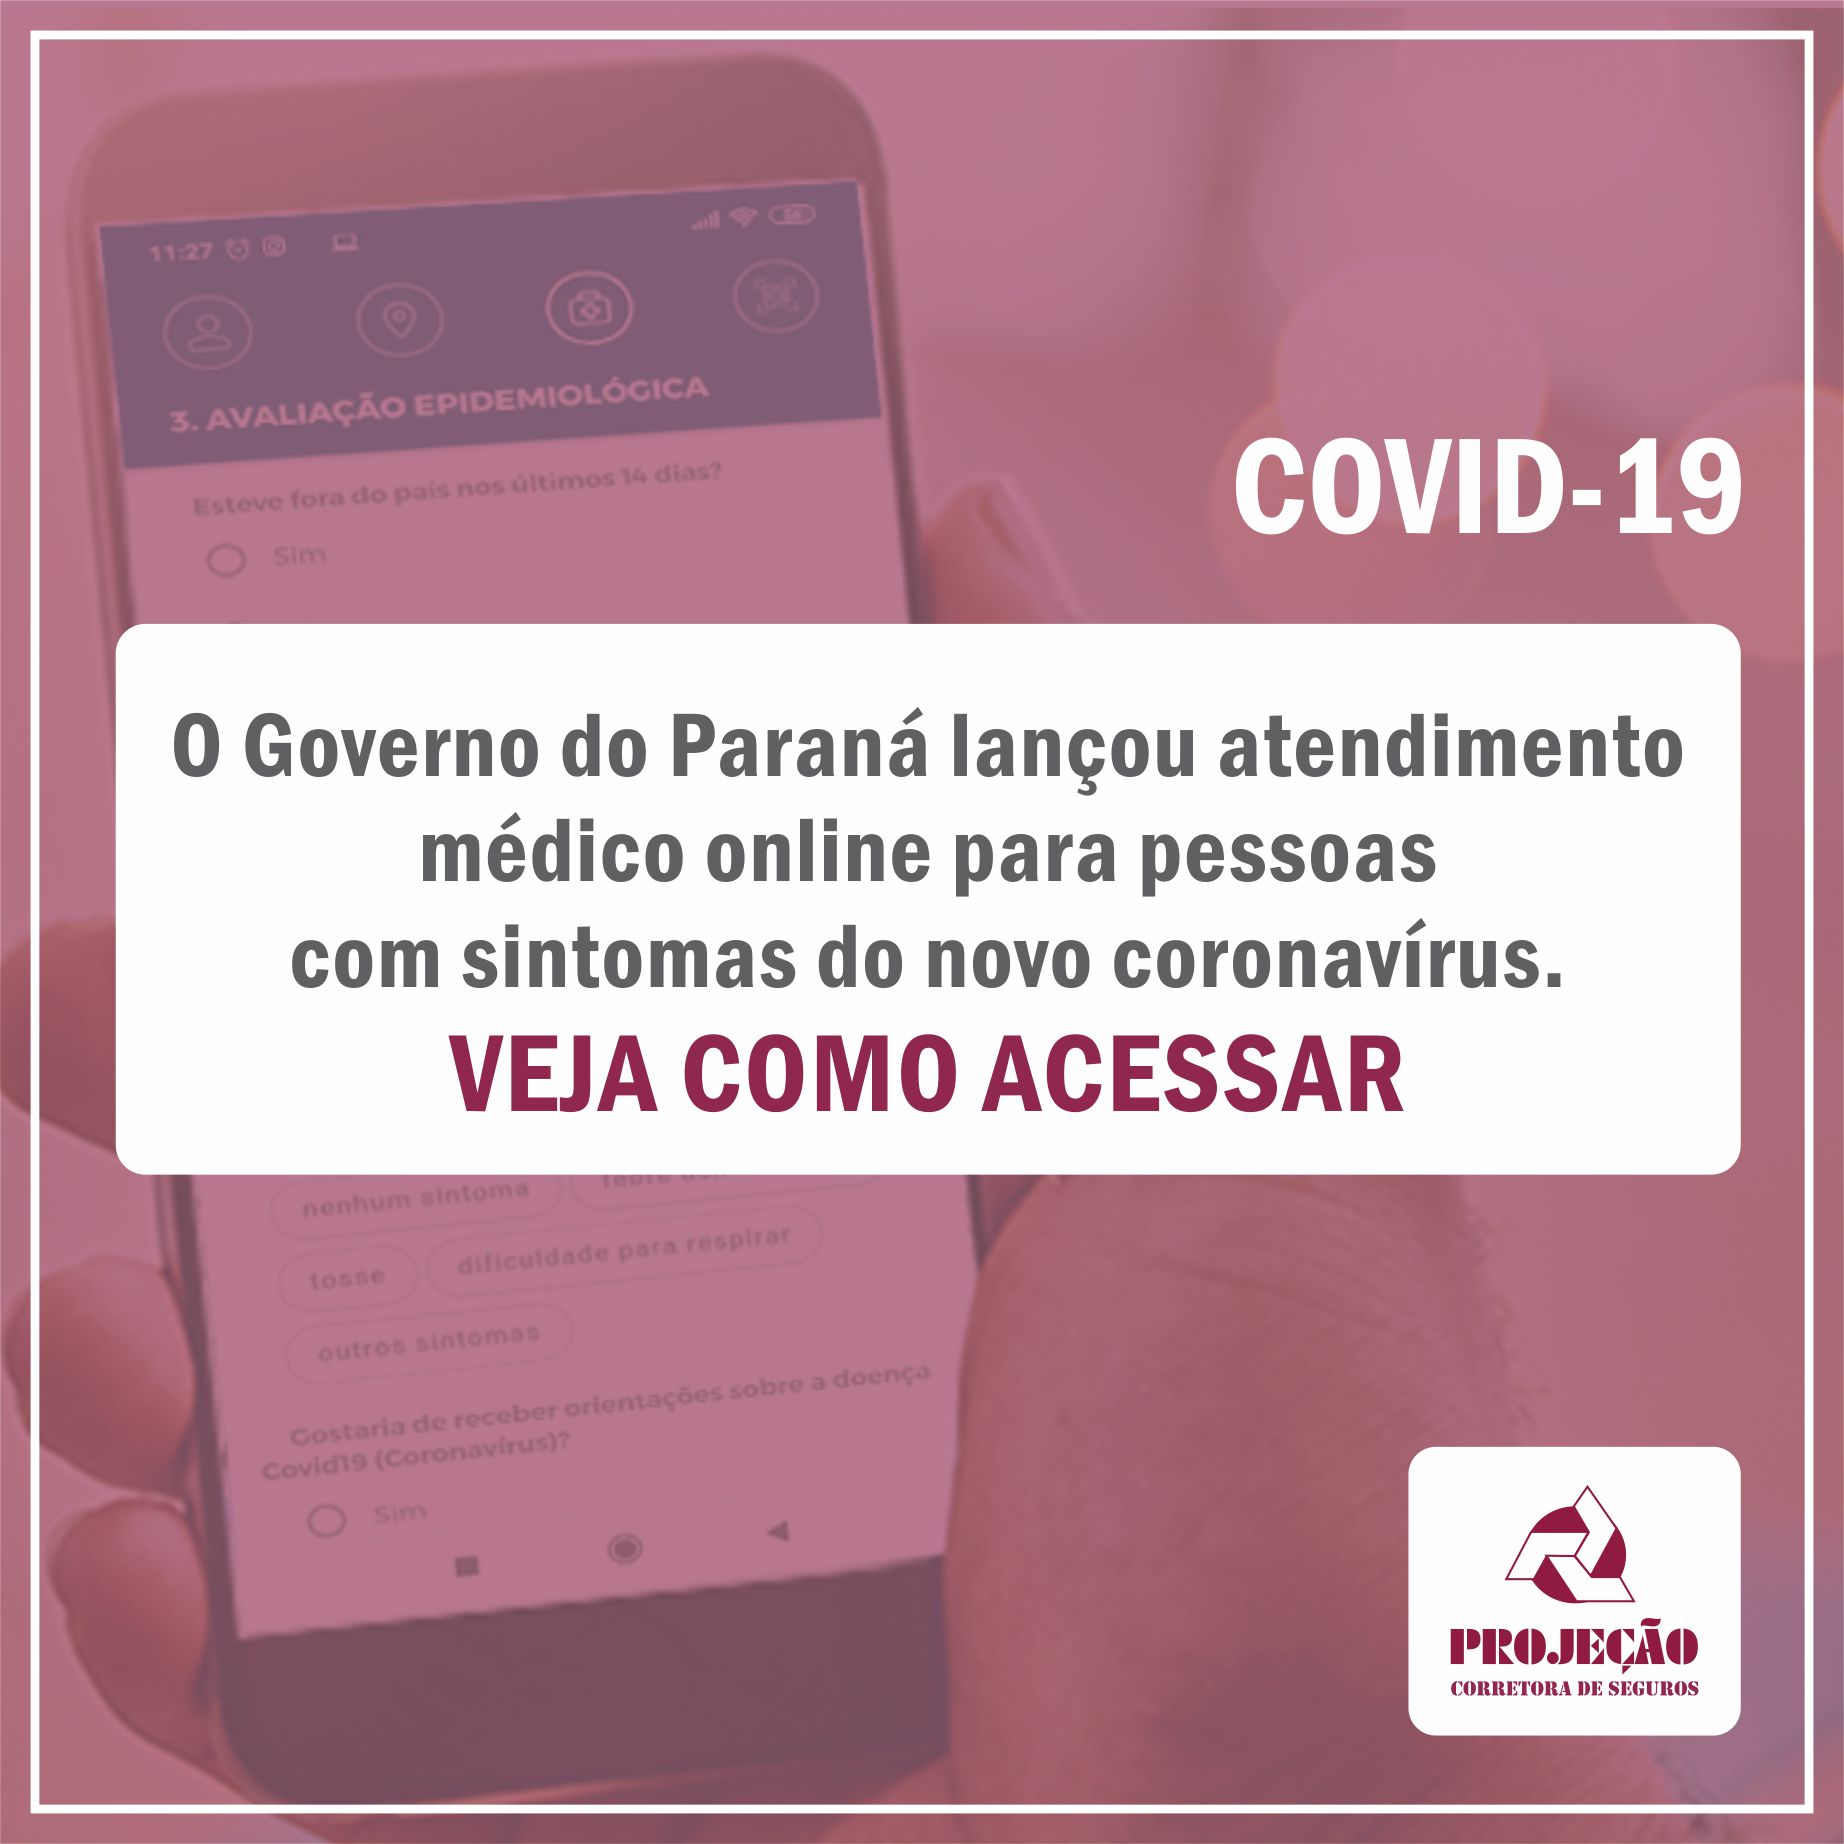 O Governo do Paraná lançou atendimento médico online para pessoas  com sintomas do novo coronavírus. Veja como acessar.